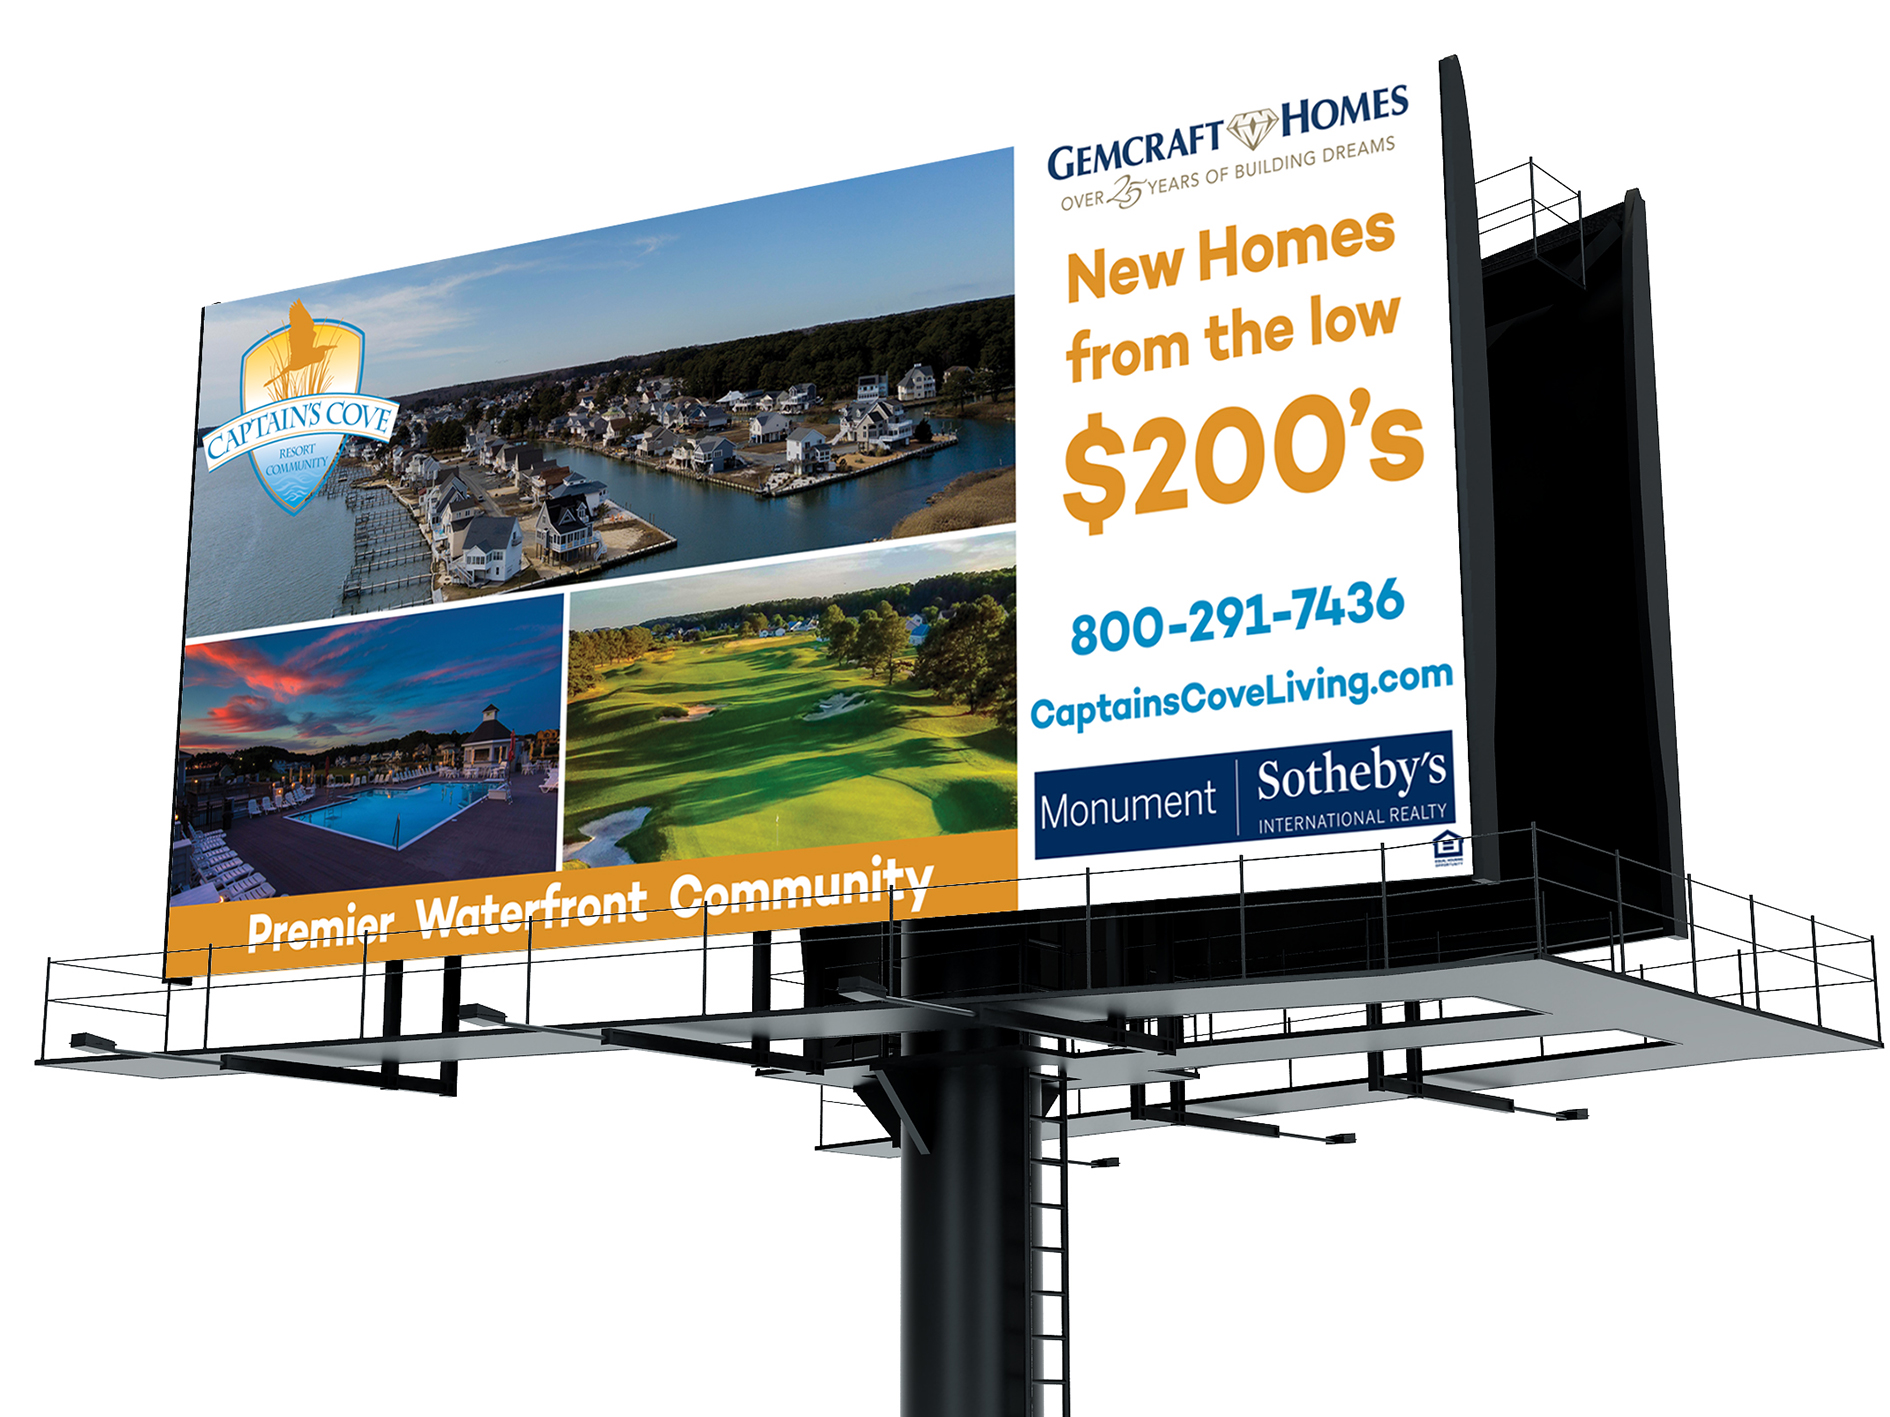 gemcraft homes billboard home builder - HeadAche Designs